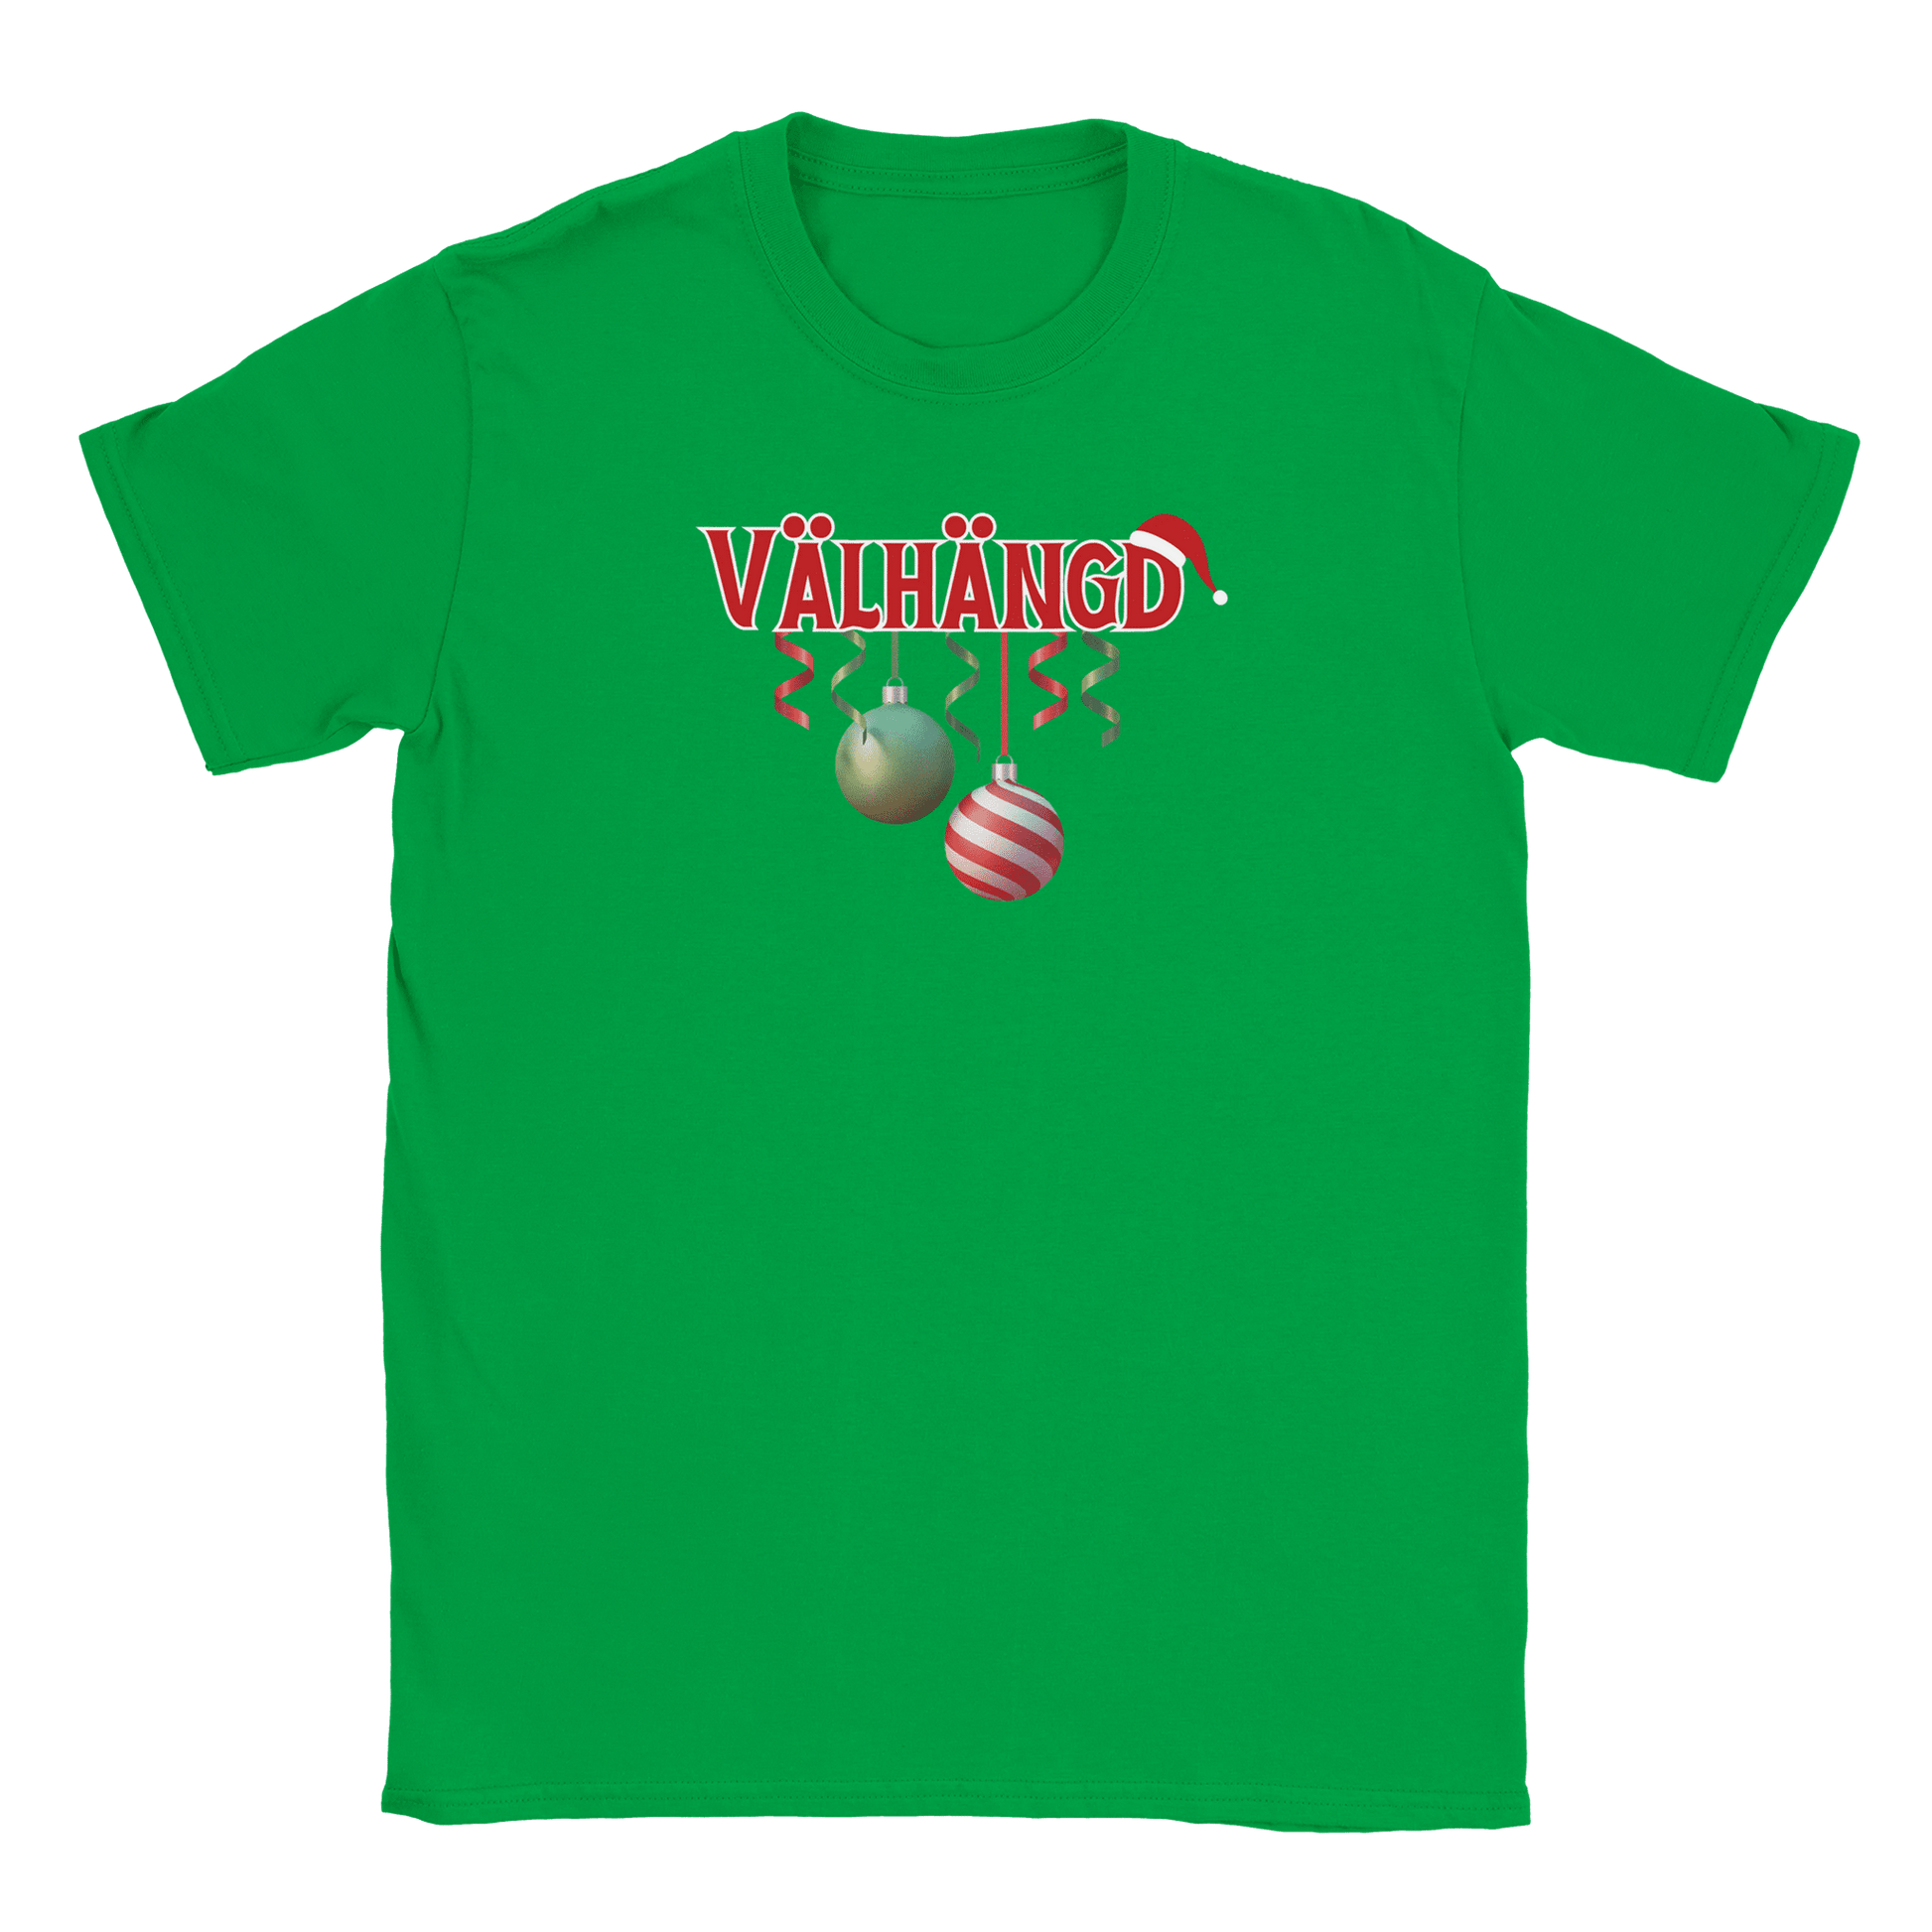 Välhängd - T-shirt Irish Green